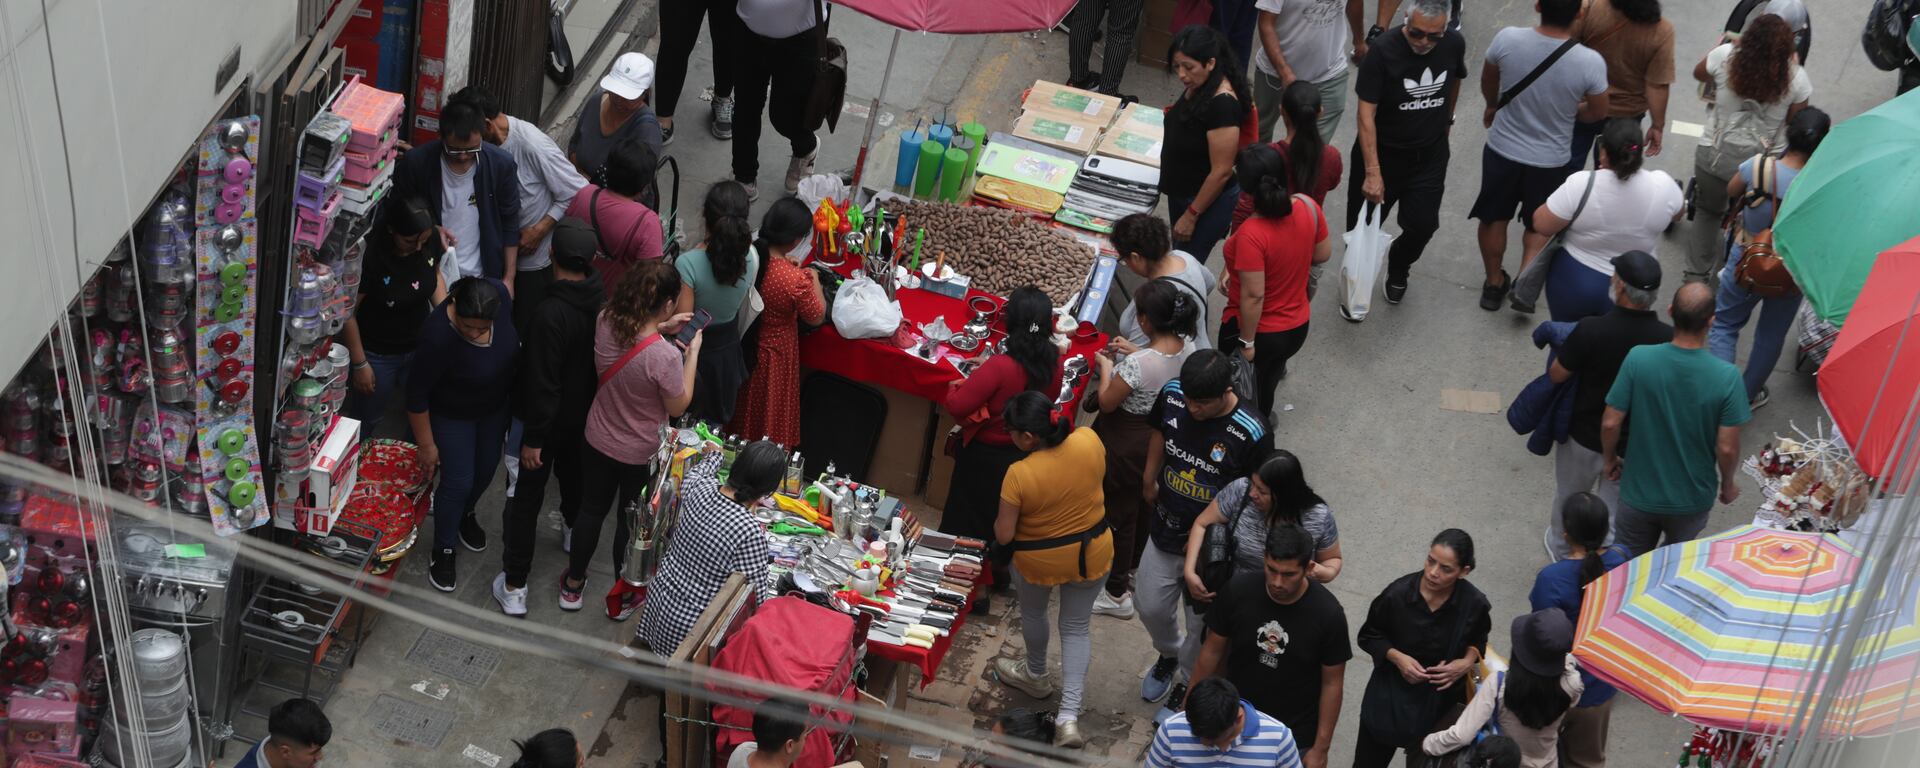 Plan Navidad Segura empieza tarde: El Comercio comprobó el caos en emporios comerciales de Lima